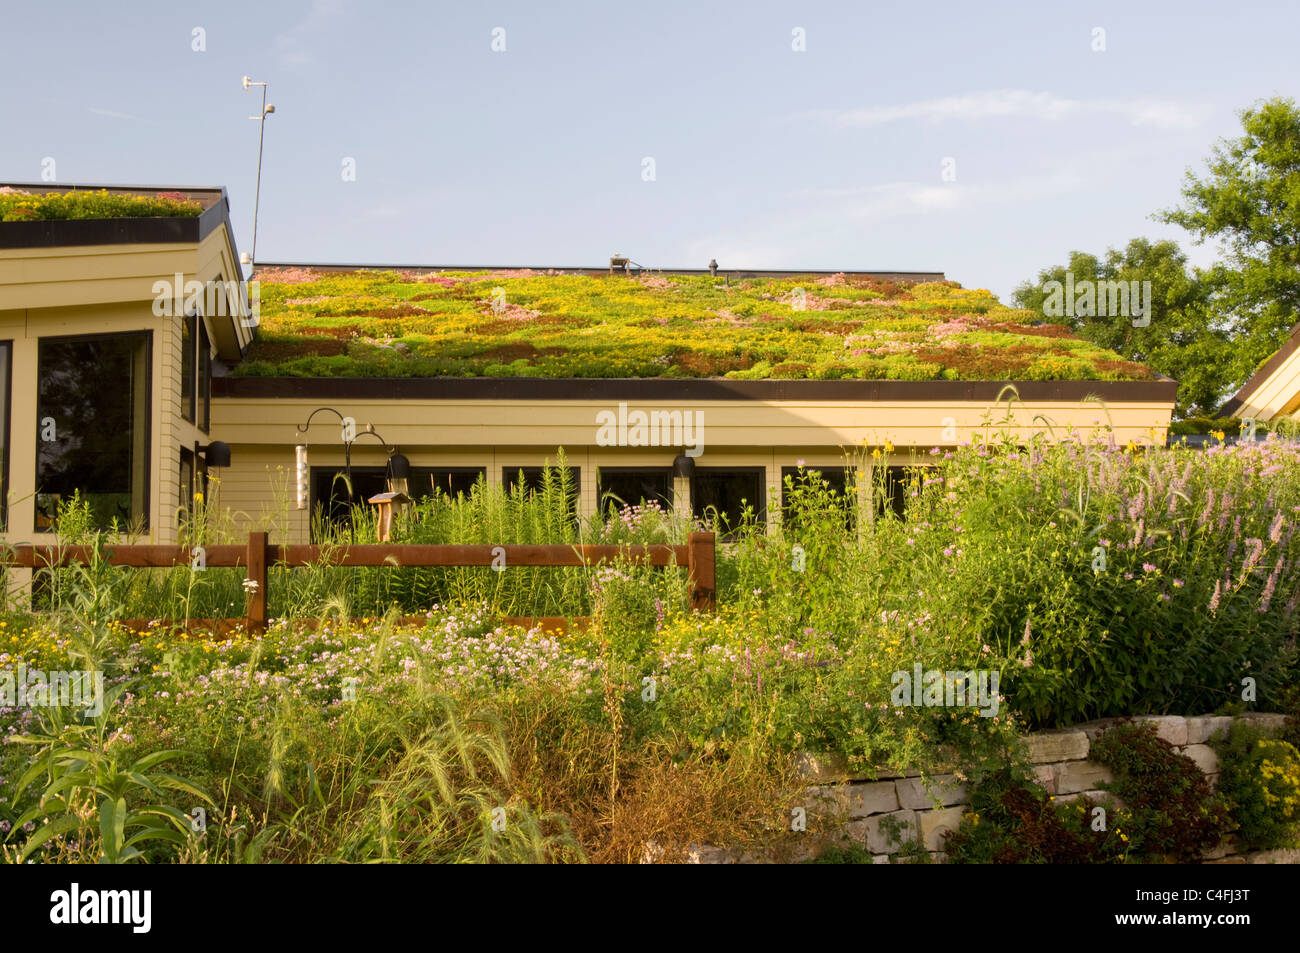 Liban Hills visitor centre à Eagan, Minnesota montrant la végétation sur le toit vert et jardins de plantes indigènes en premier plan Banque D'Images